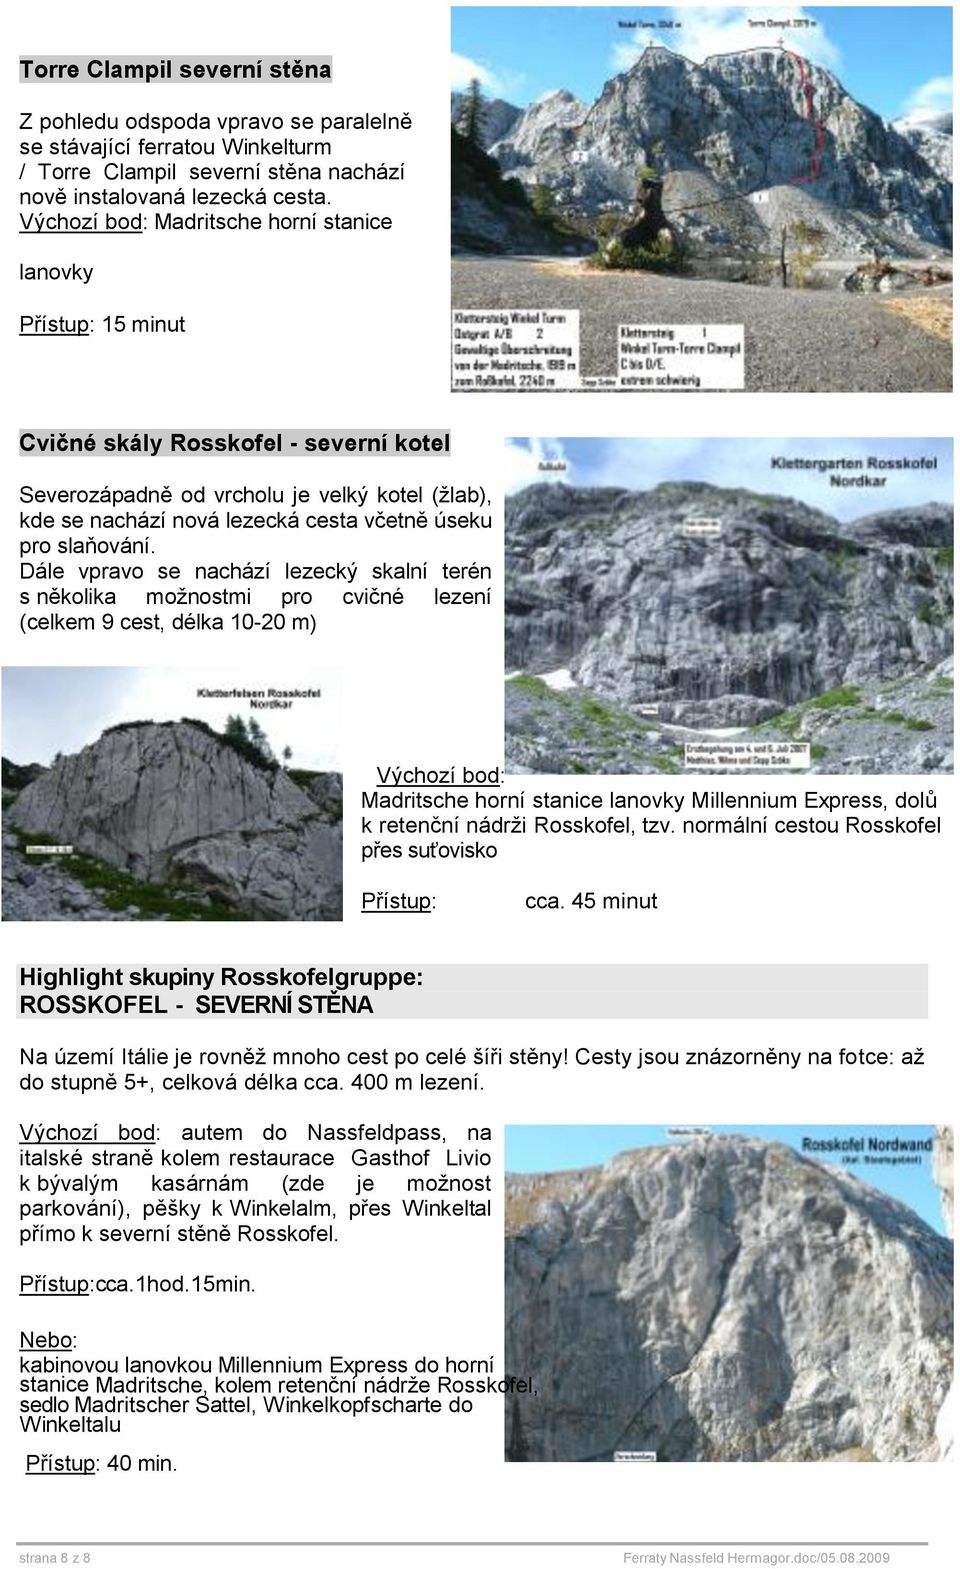 Dále vpravo se nachází lezecký skalní terén s několika možnostmi pro cvičné lezení (celkem 9 cest, délka 10-20 m) Madritsche horní stanice lanovky Millennium Express, dolů k retenční nádrži